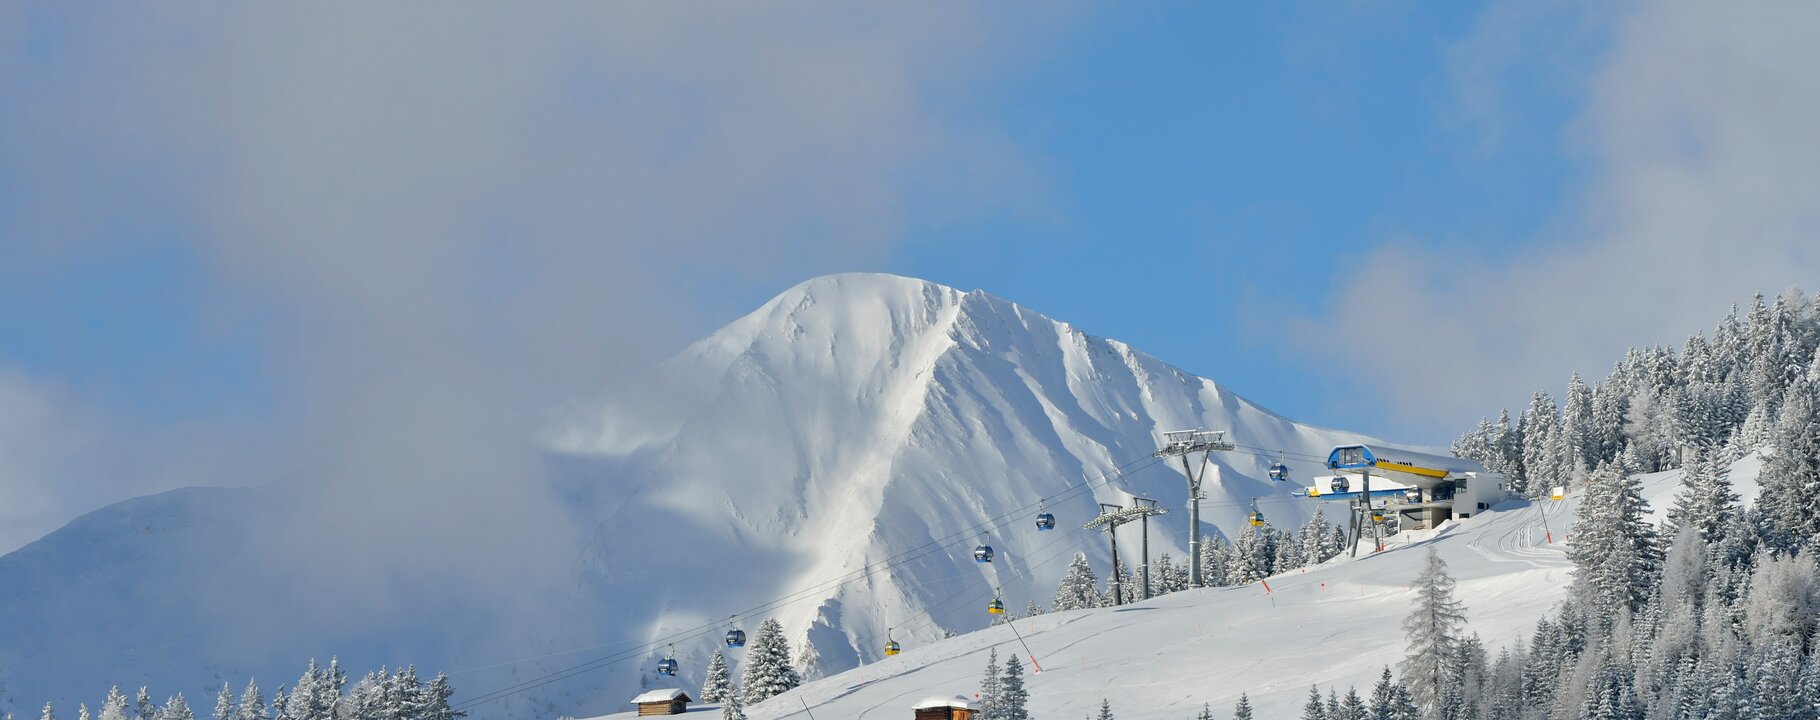 Waldbahn im Winter mit Schnee in Serfaus-Fiss-Ladis, Tirol, Österreich | © Serfaus-Fiss-Ladis Marketing GmbH